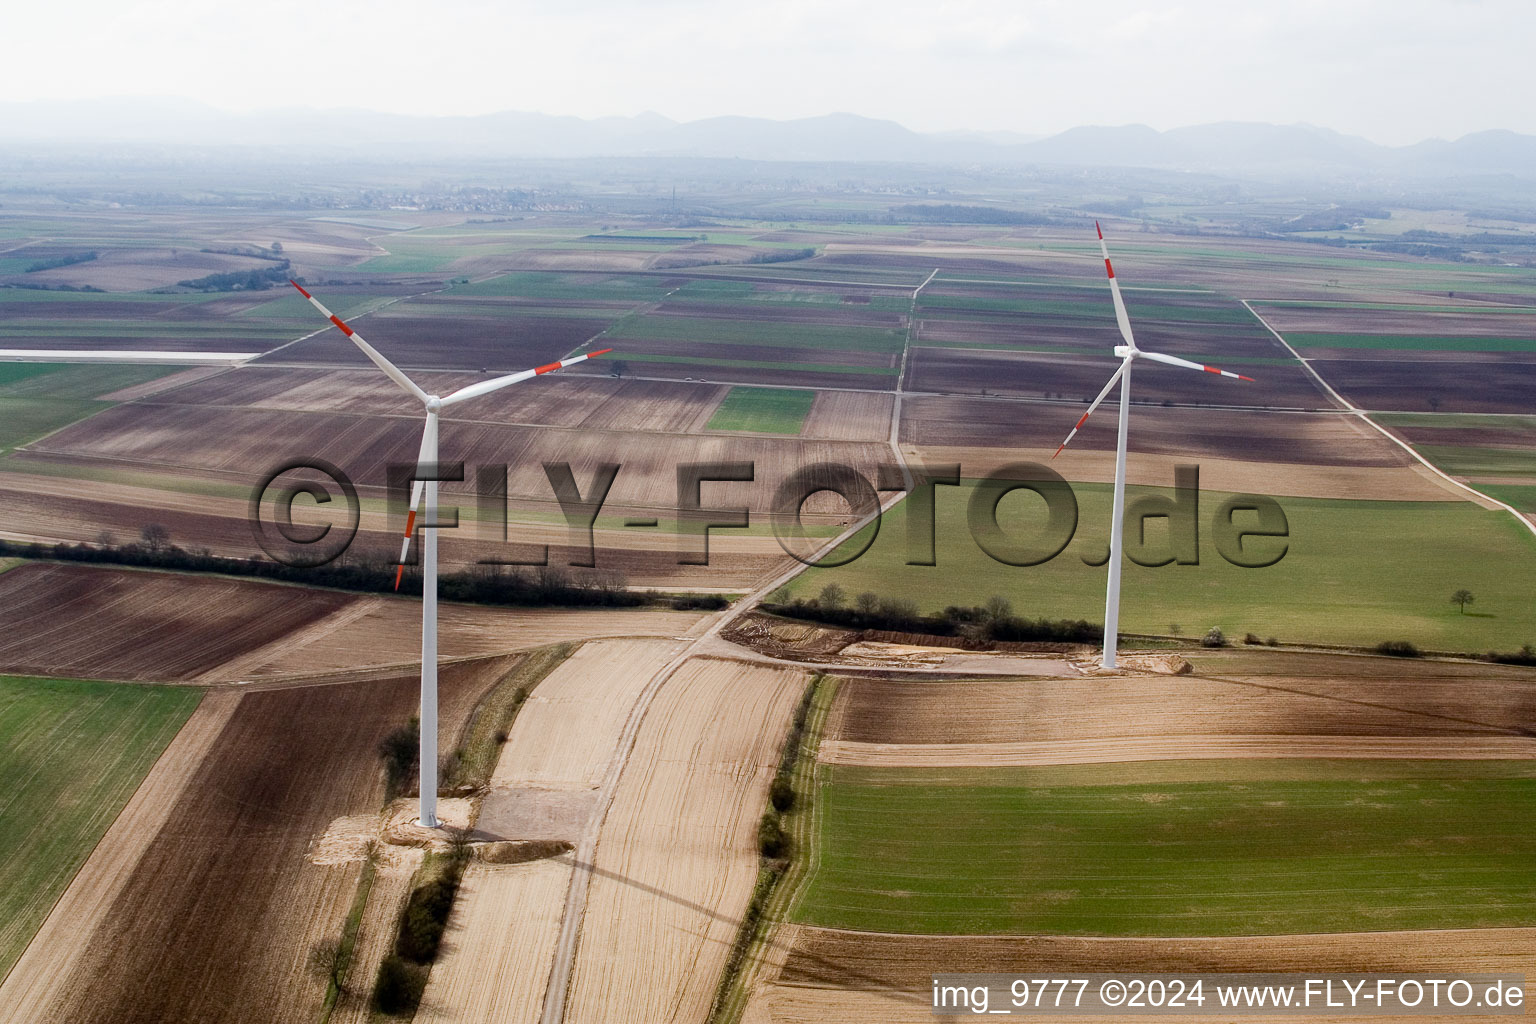 Éoliennes à Offenbach an der Queich dans le département Rhénanie-Palatinat, Allemagne depuis l'avion